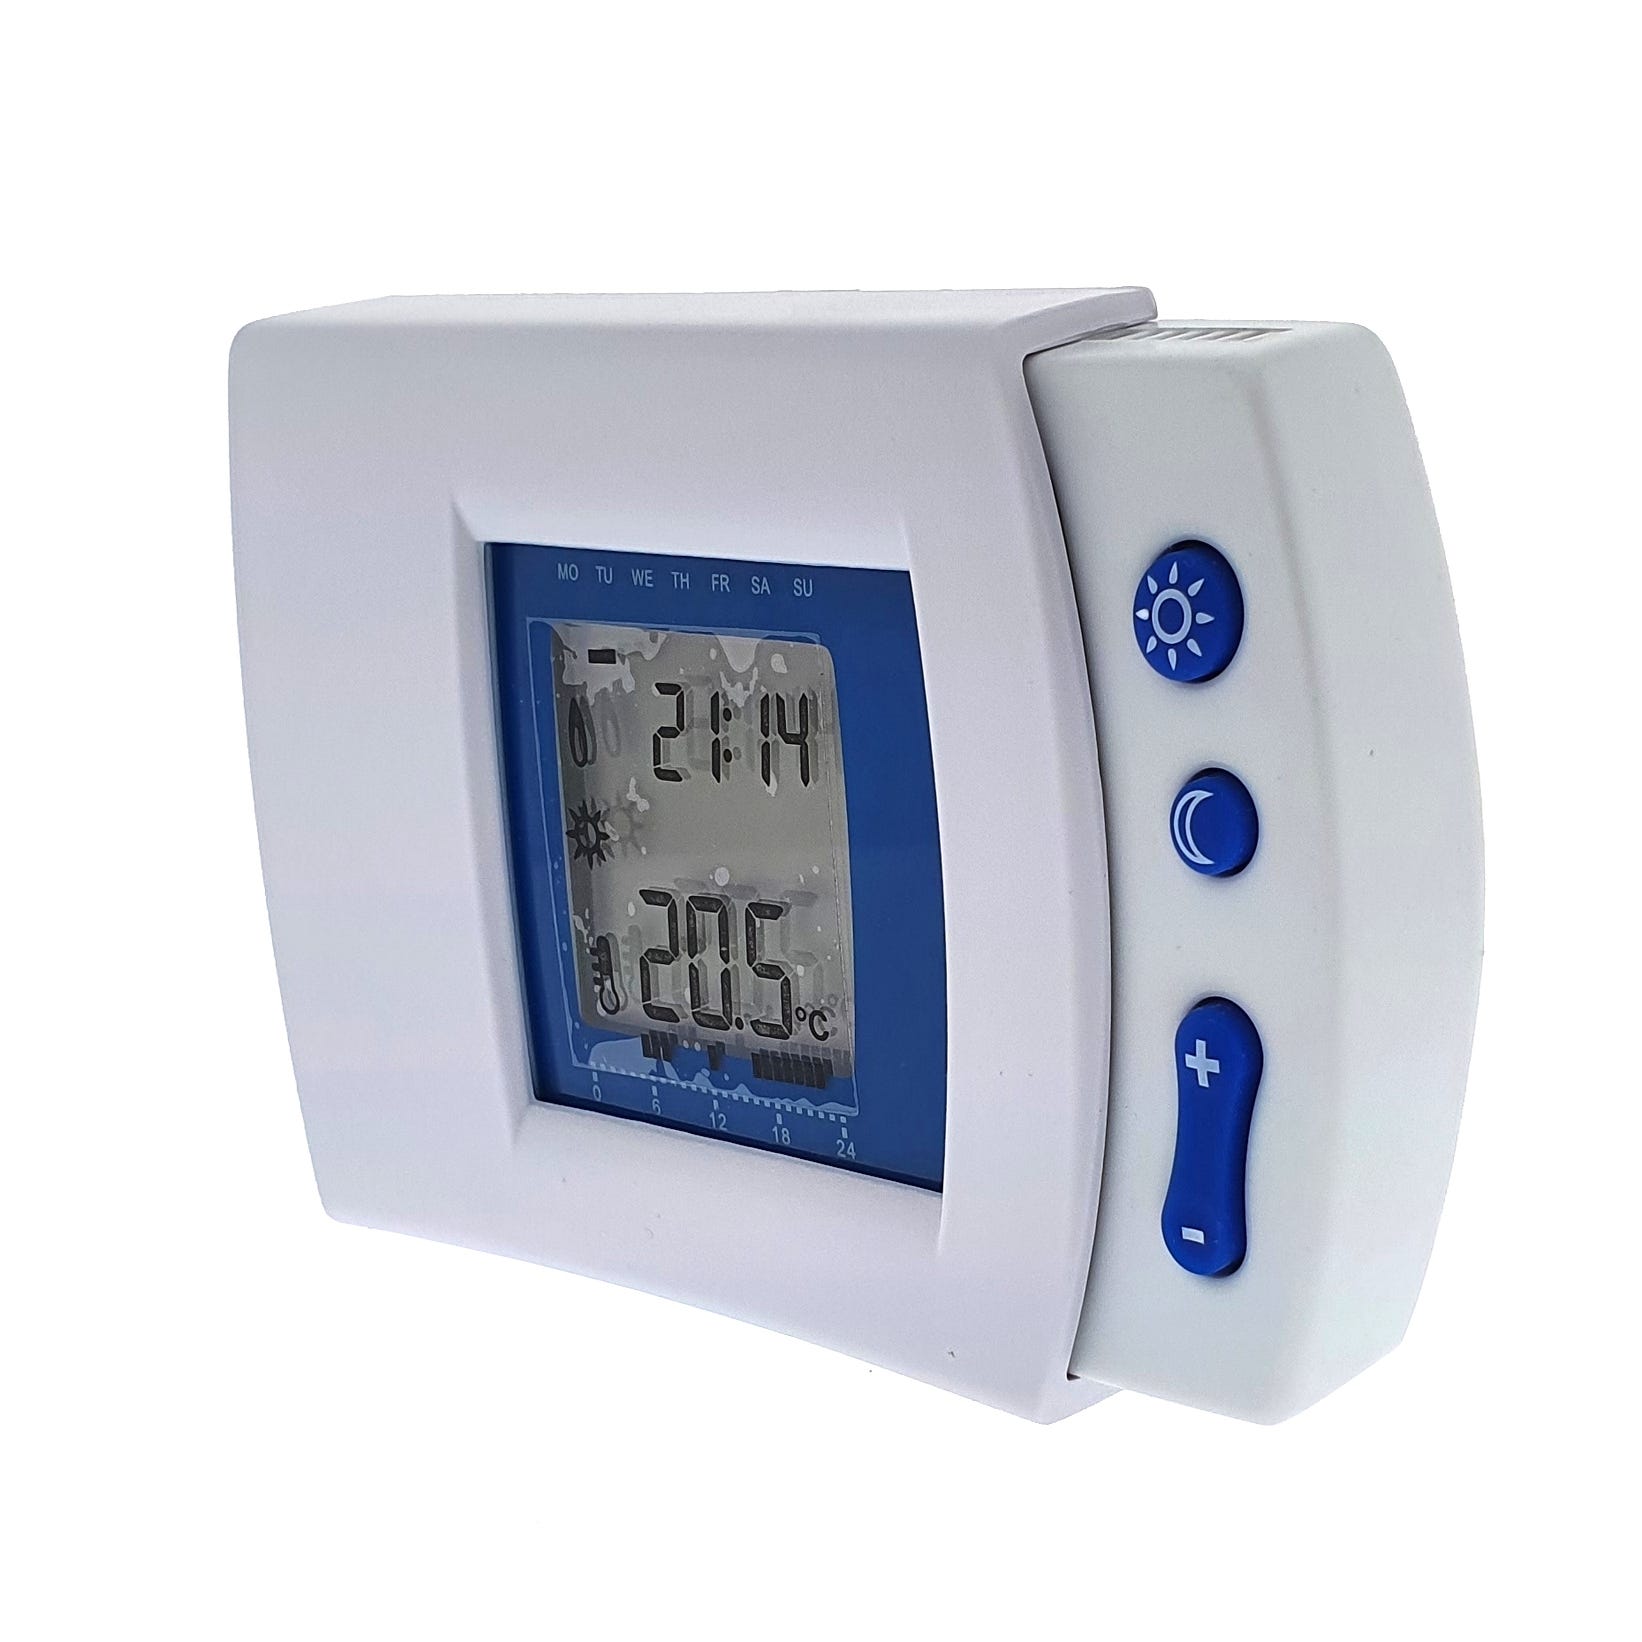 Leroy Merlin: termostatos inteligentes que reducen el consumo de